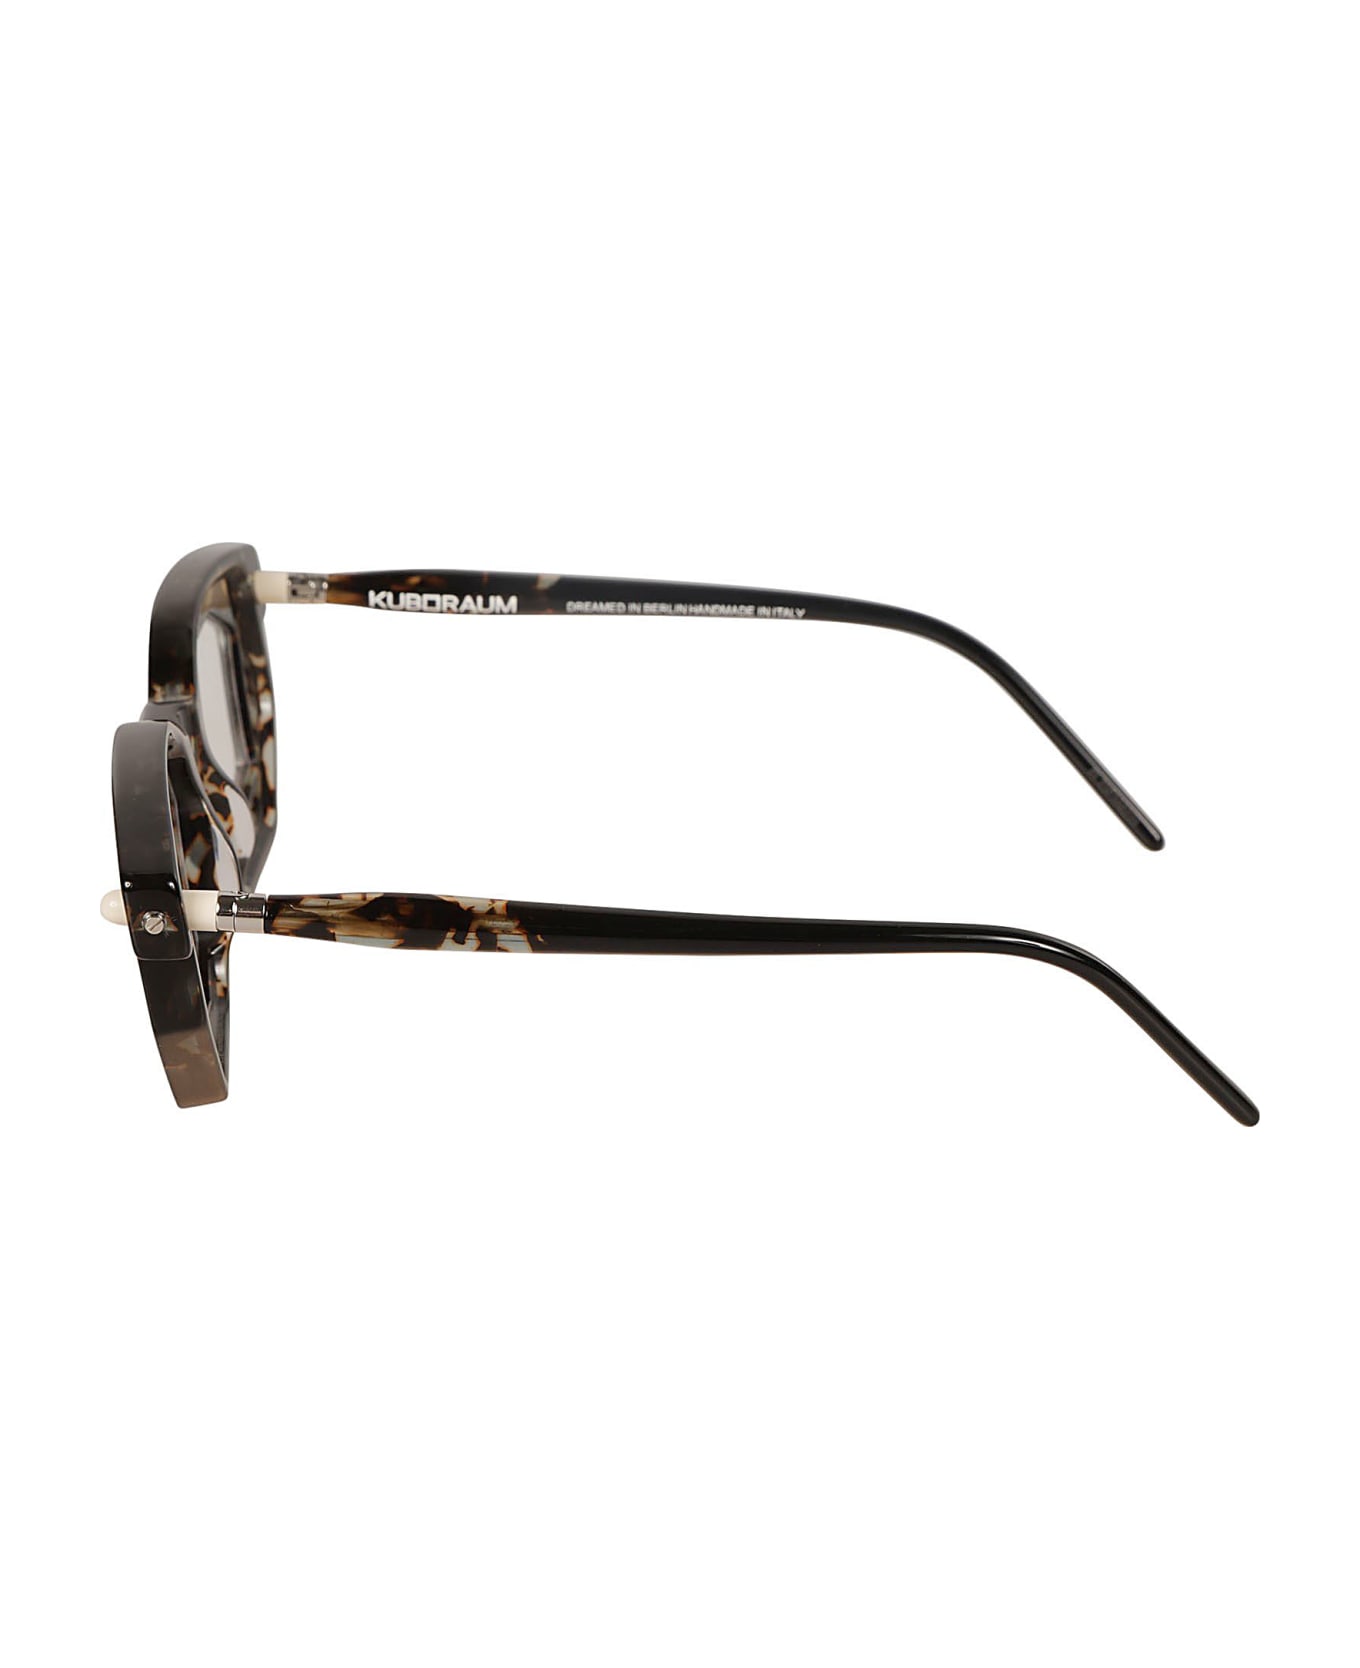 Kuboraum P14 Glasses Glasses - havana アイウェア